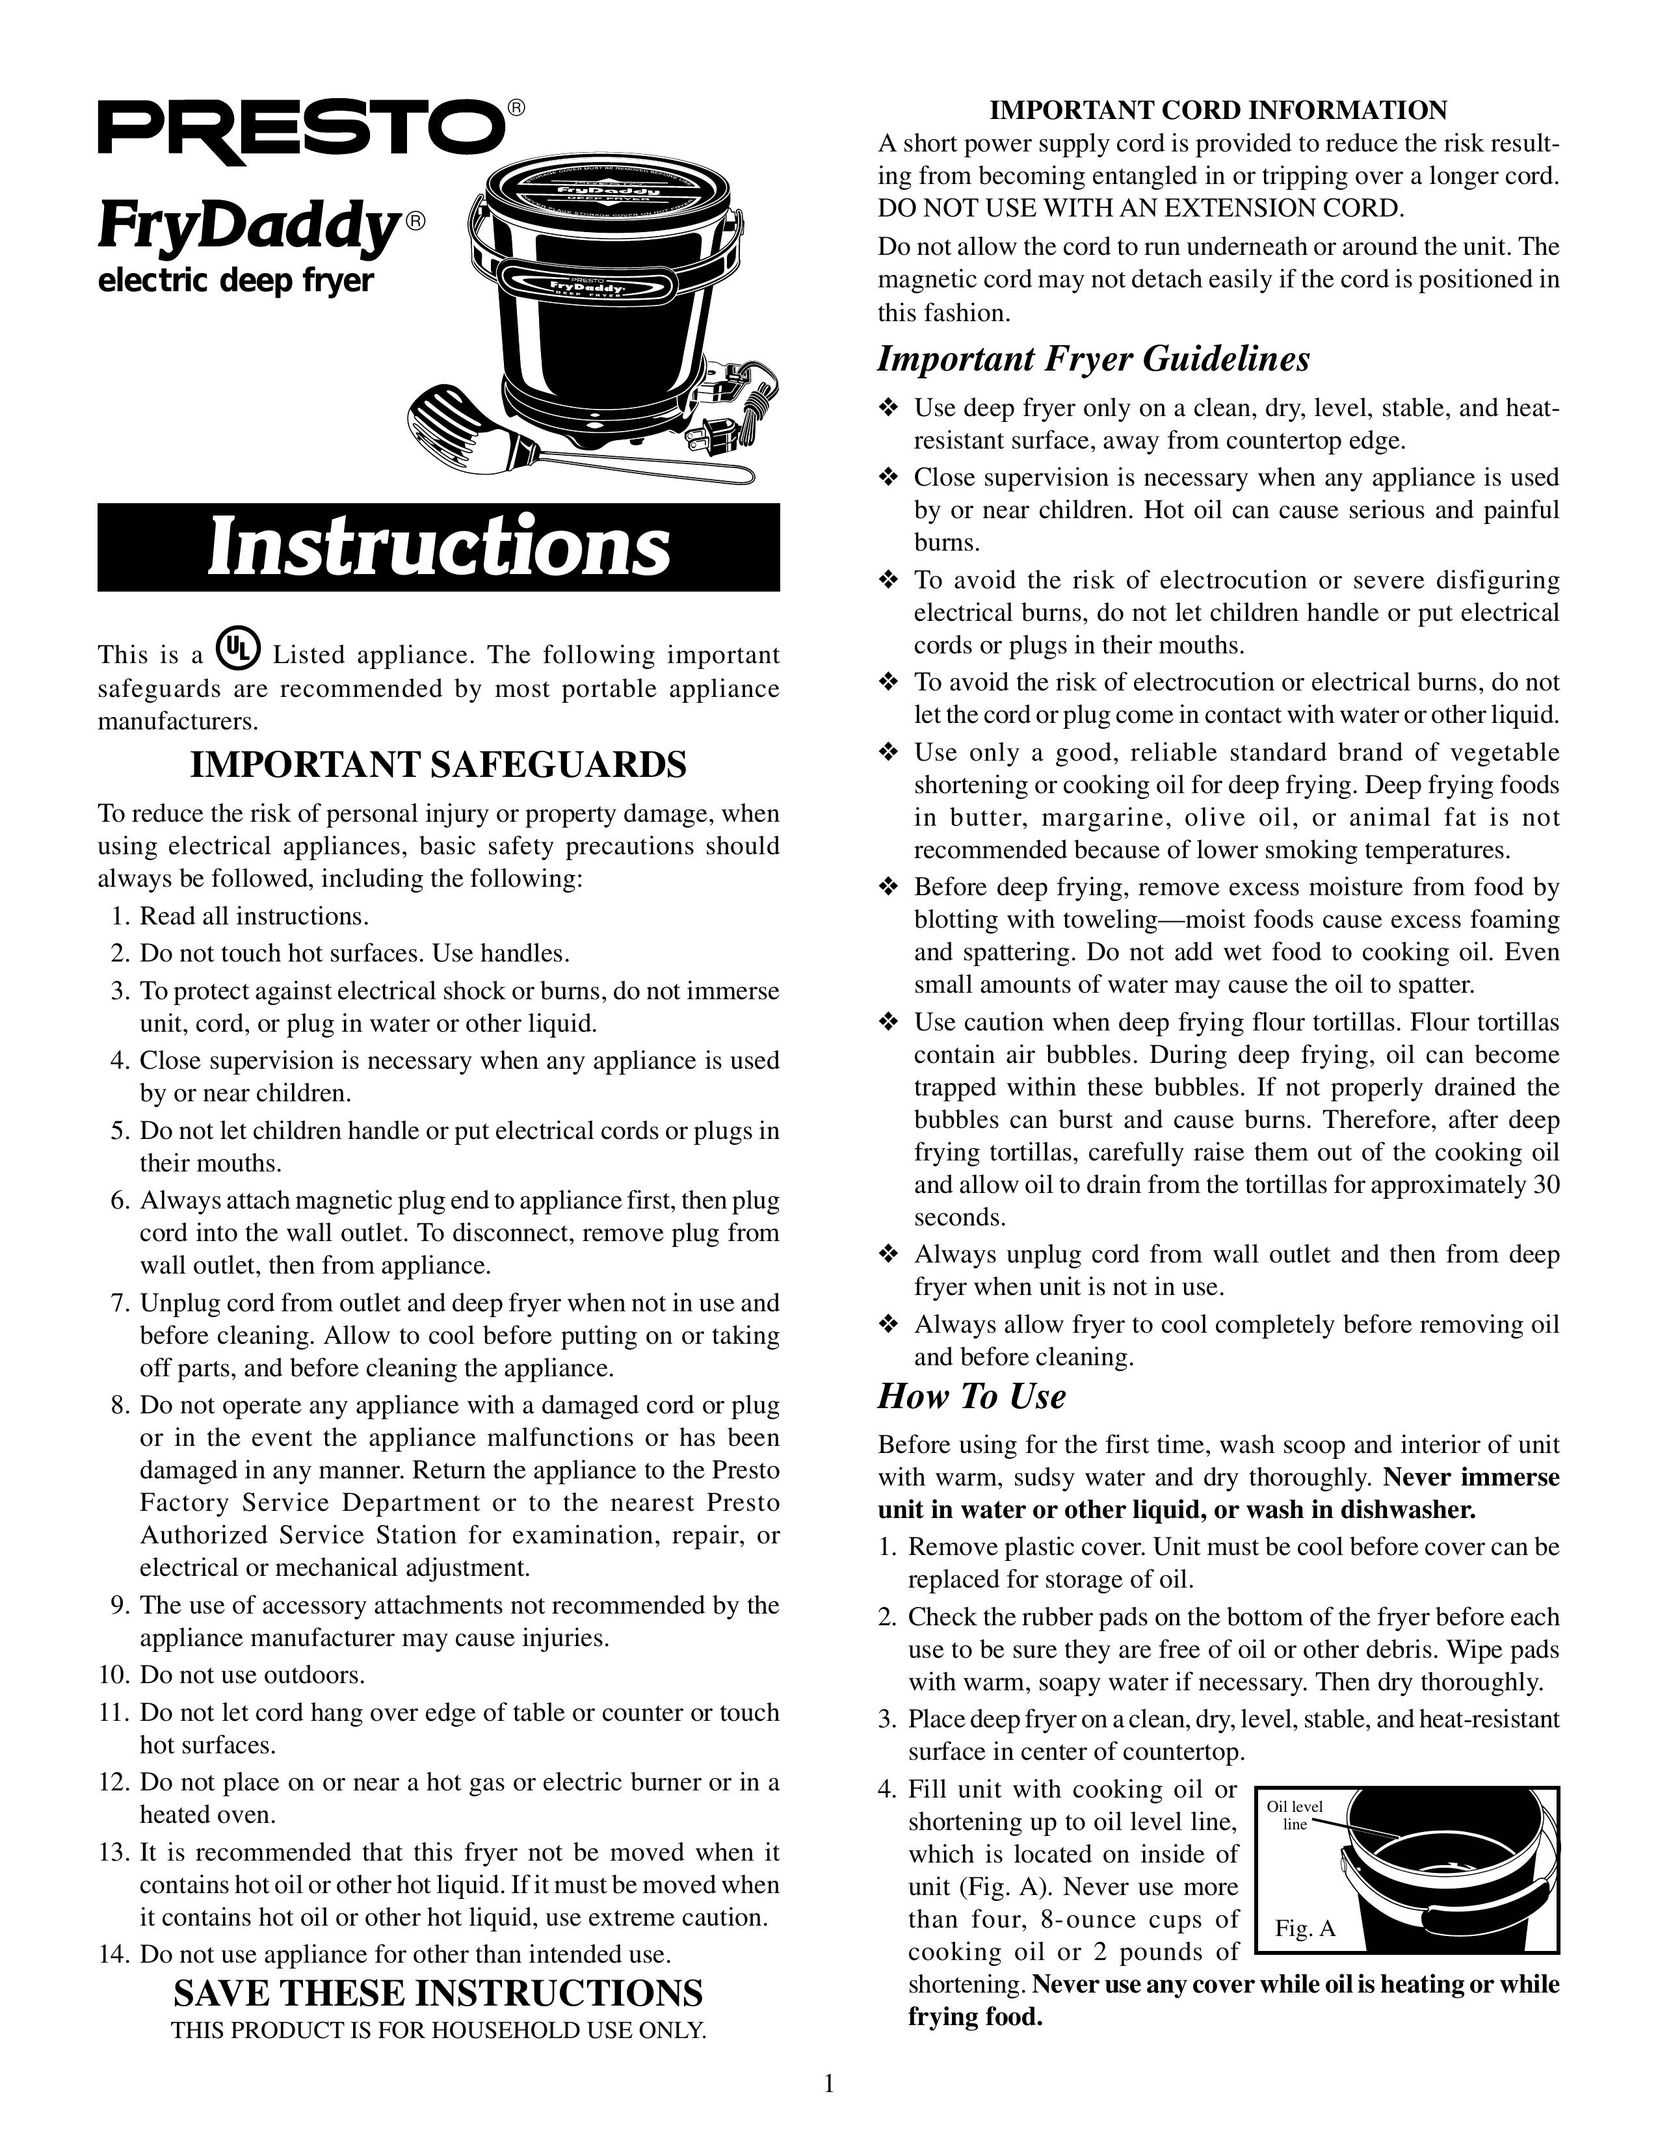 Presto FryDaddy electric deep fryer Fryer User Manual